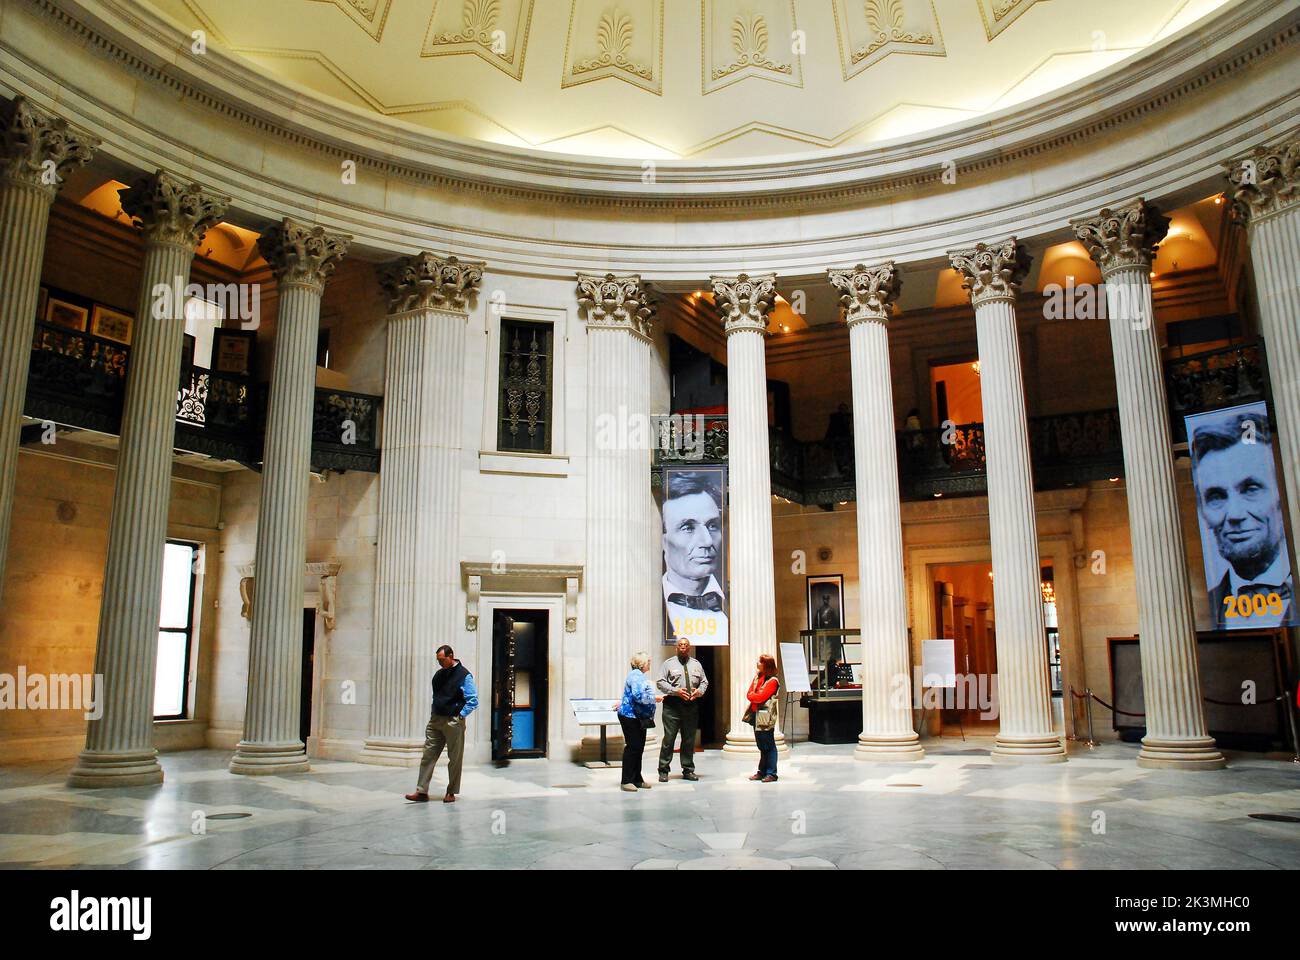 Les gens font le tour de l'intérieur du monument national de Federal Hall, où George Washington a pris le serment de la présidence, à New York Banque D'Images